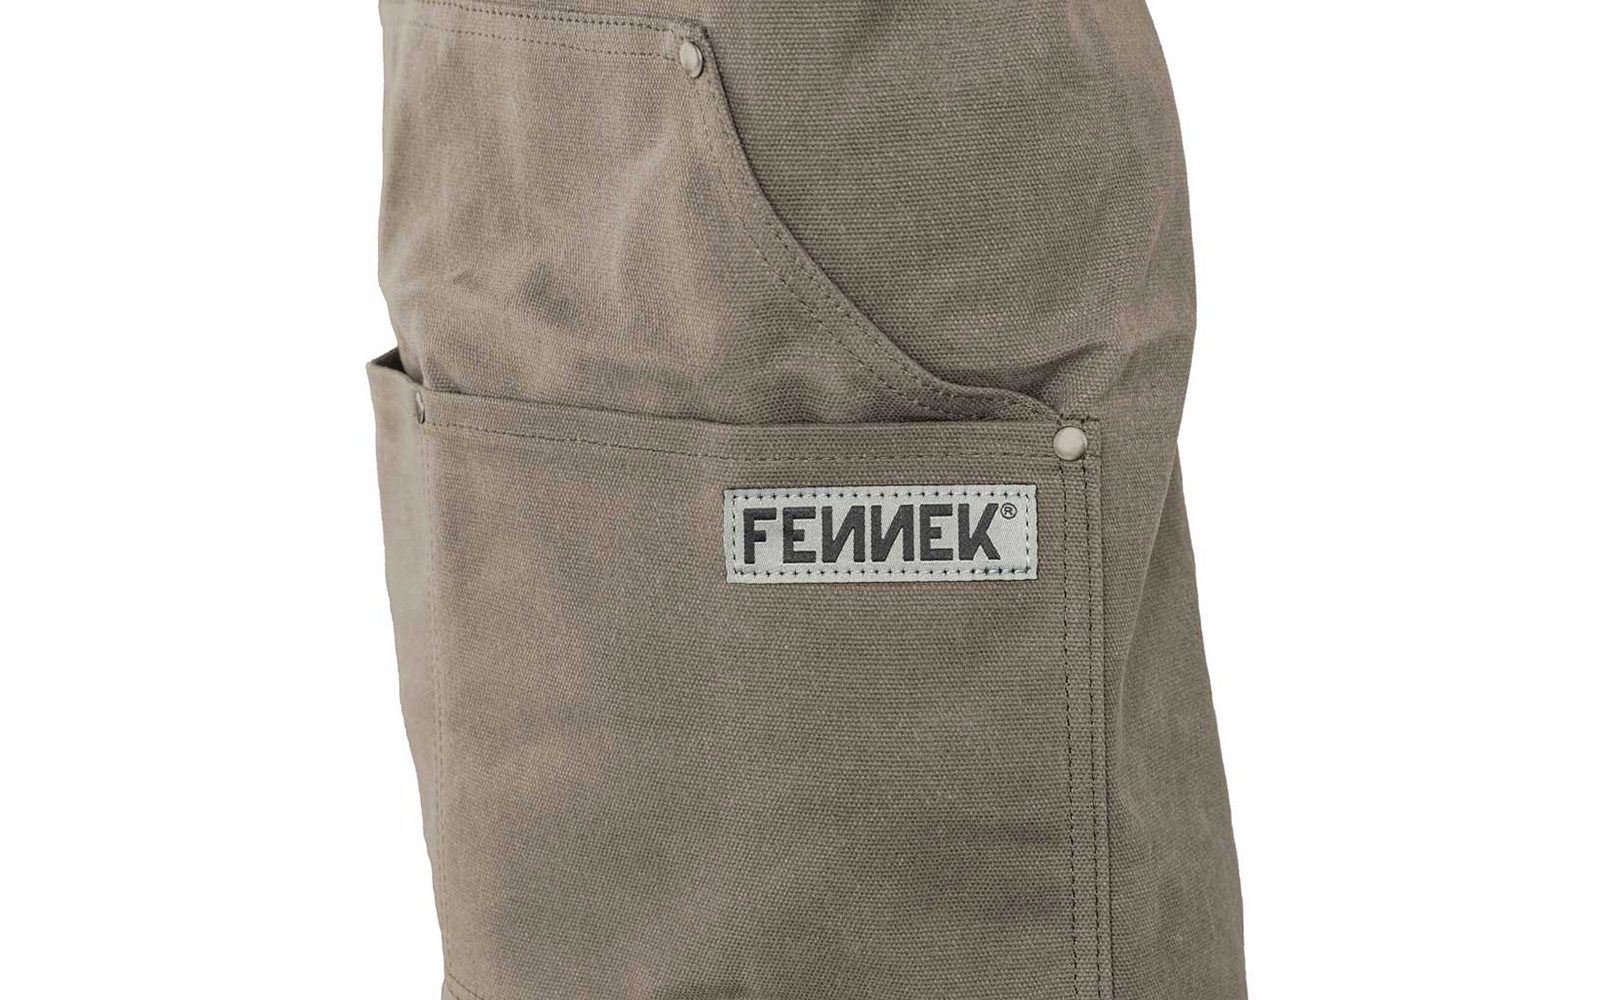 FENNEK-Schriftzug aufgenäht auf die große Fronttasche der Grillschürze.